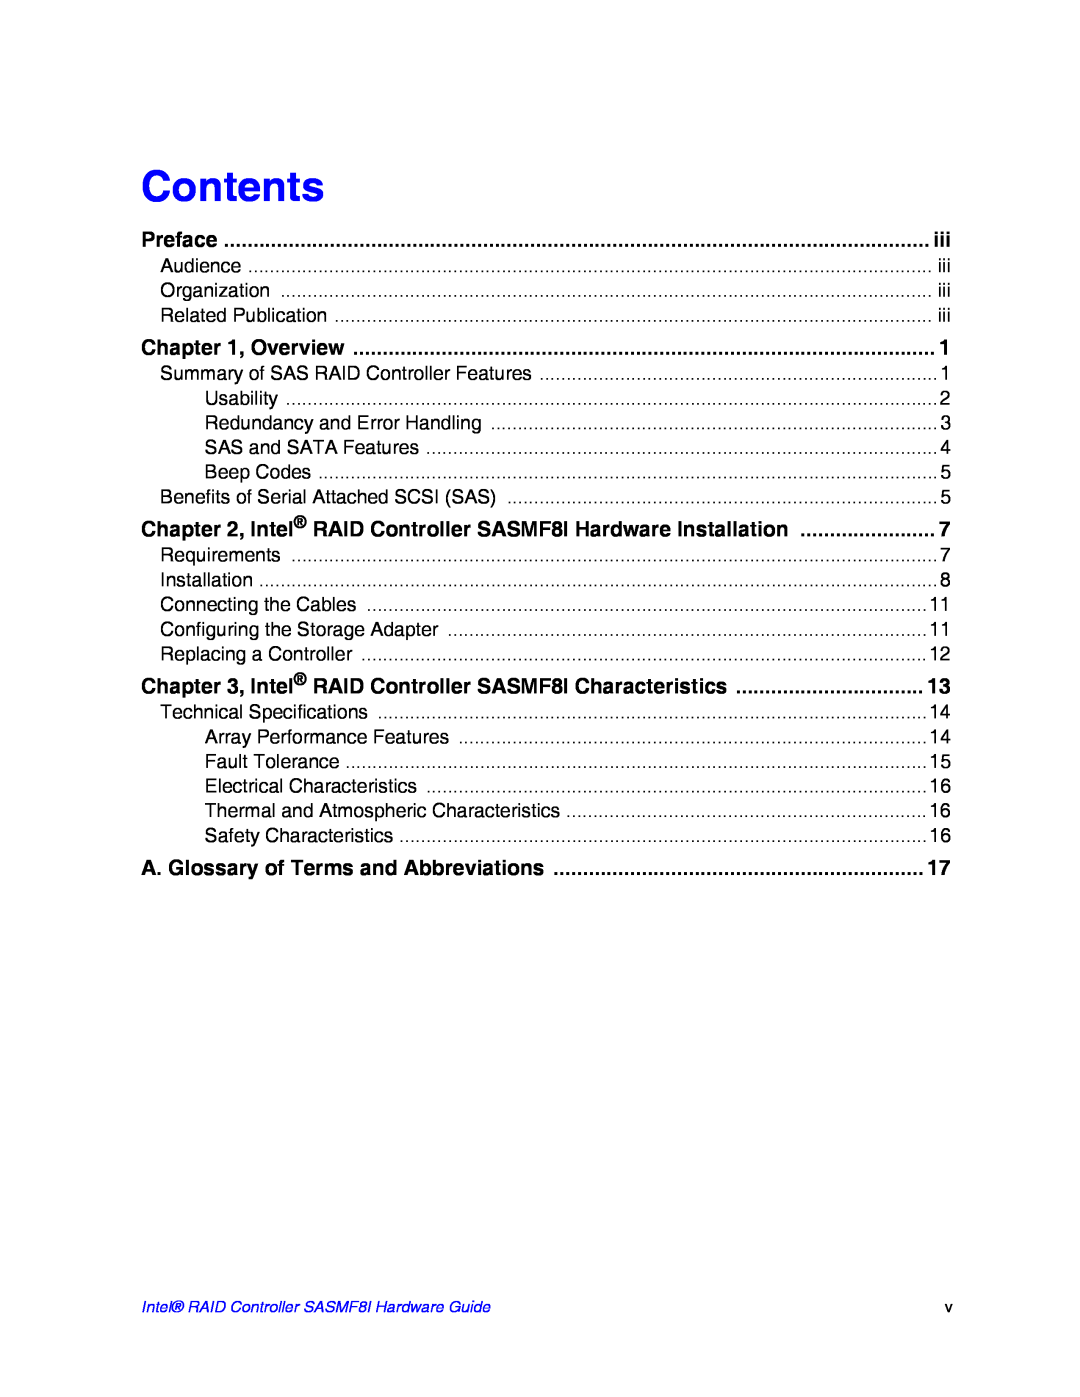 Intel SASMF8I manual Contents 